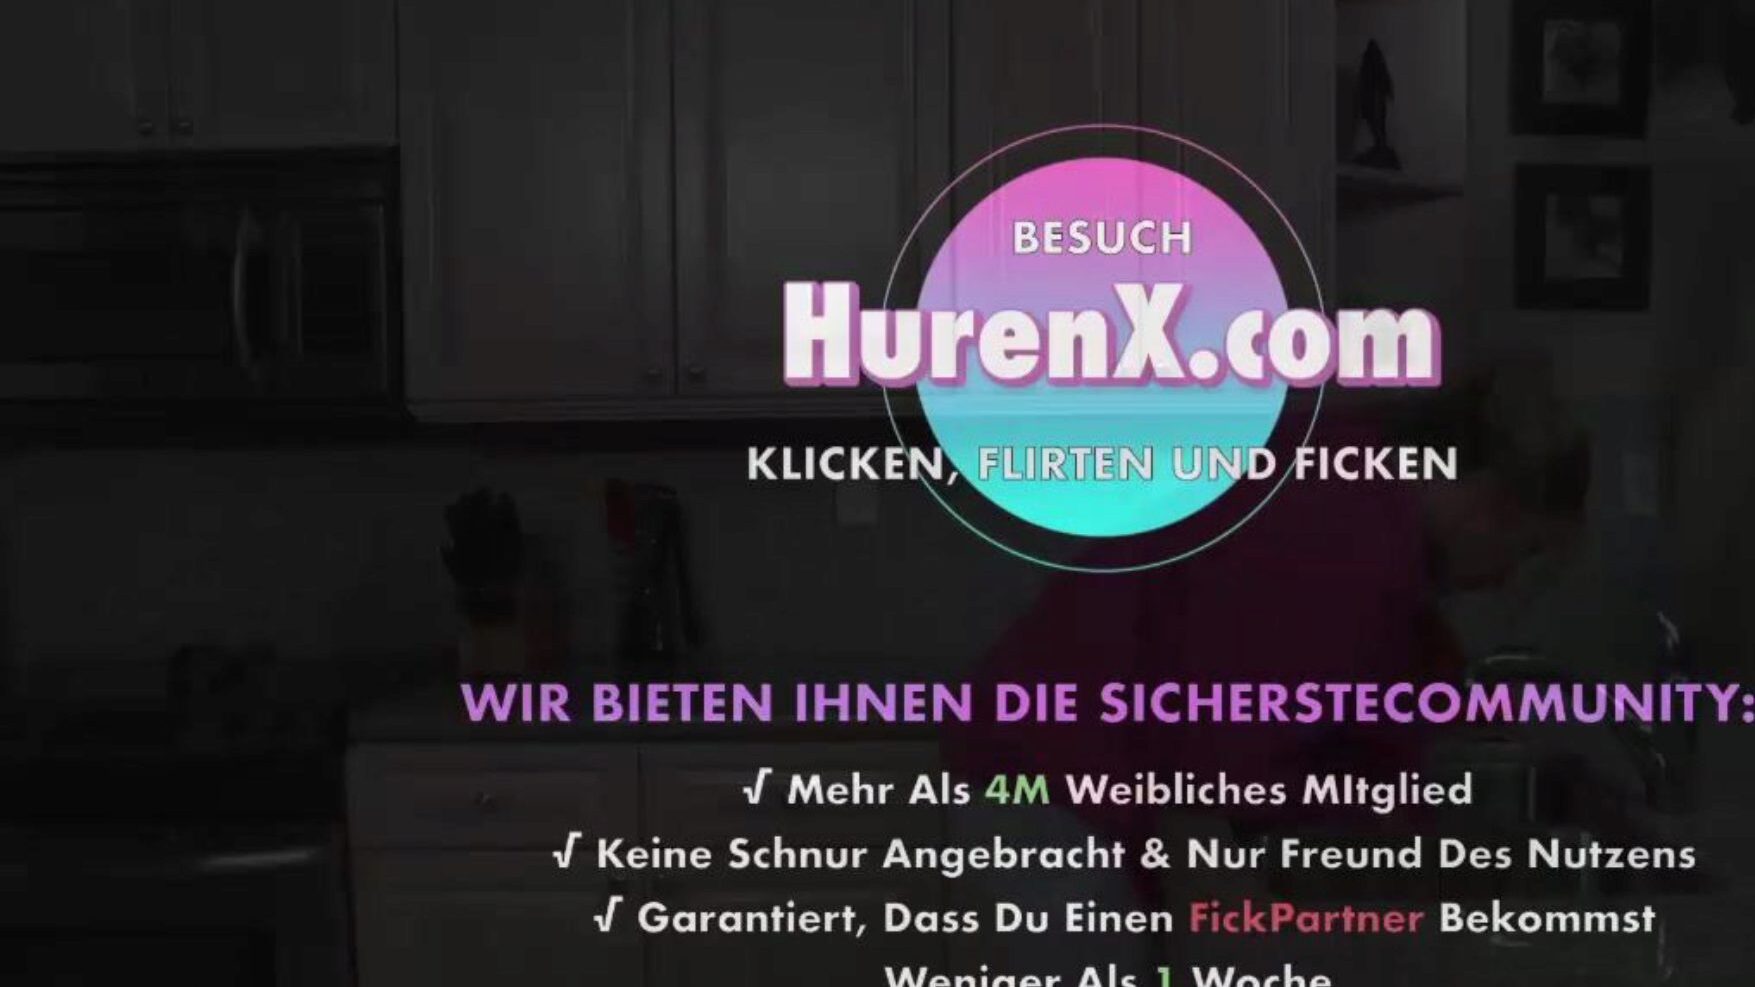 stiefmutter meine hilfe, porno xnxc gratuit b5: montre xhamster stiefmutter will meine hilfe scène de film sur xhamster, le plus grand site Web de tube hd fuck-fest avec des tonnes de clips pornographiques allemands gratuits xnxc & murmure allemand